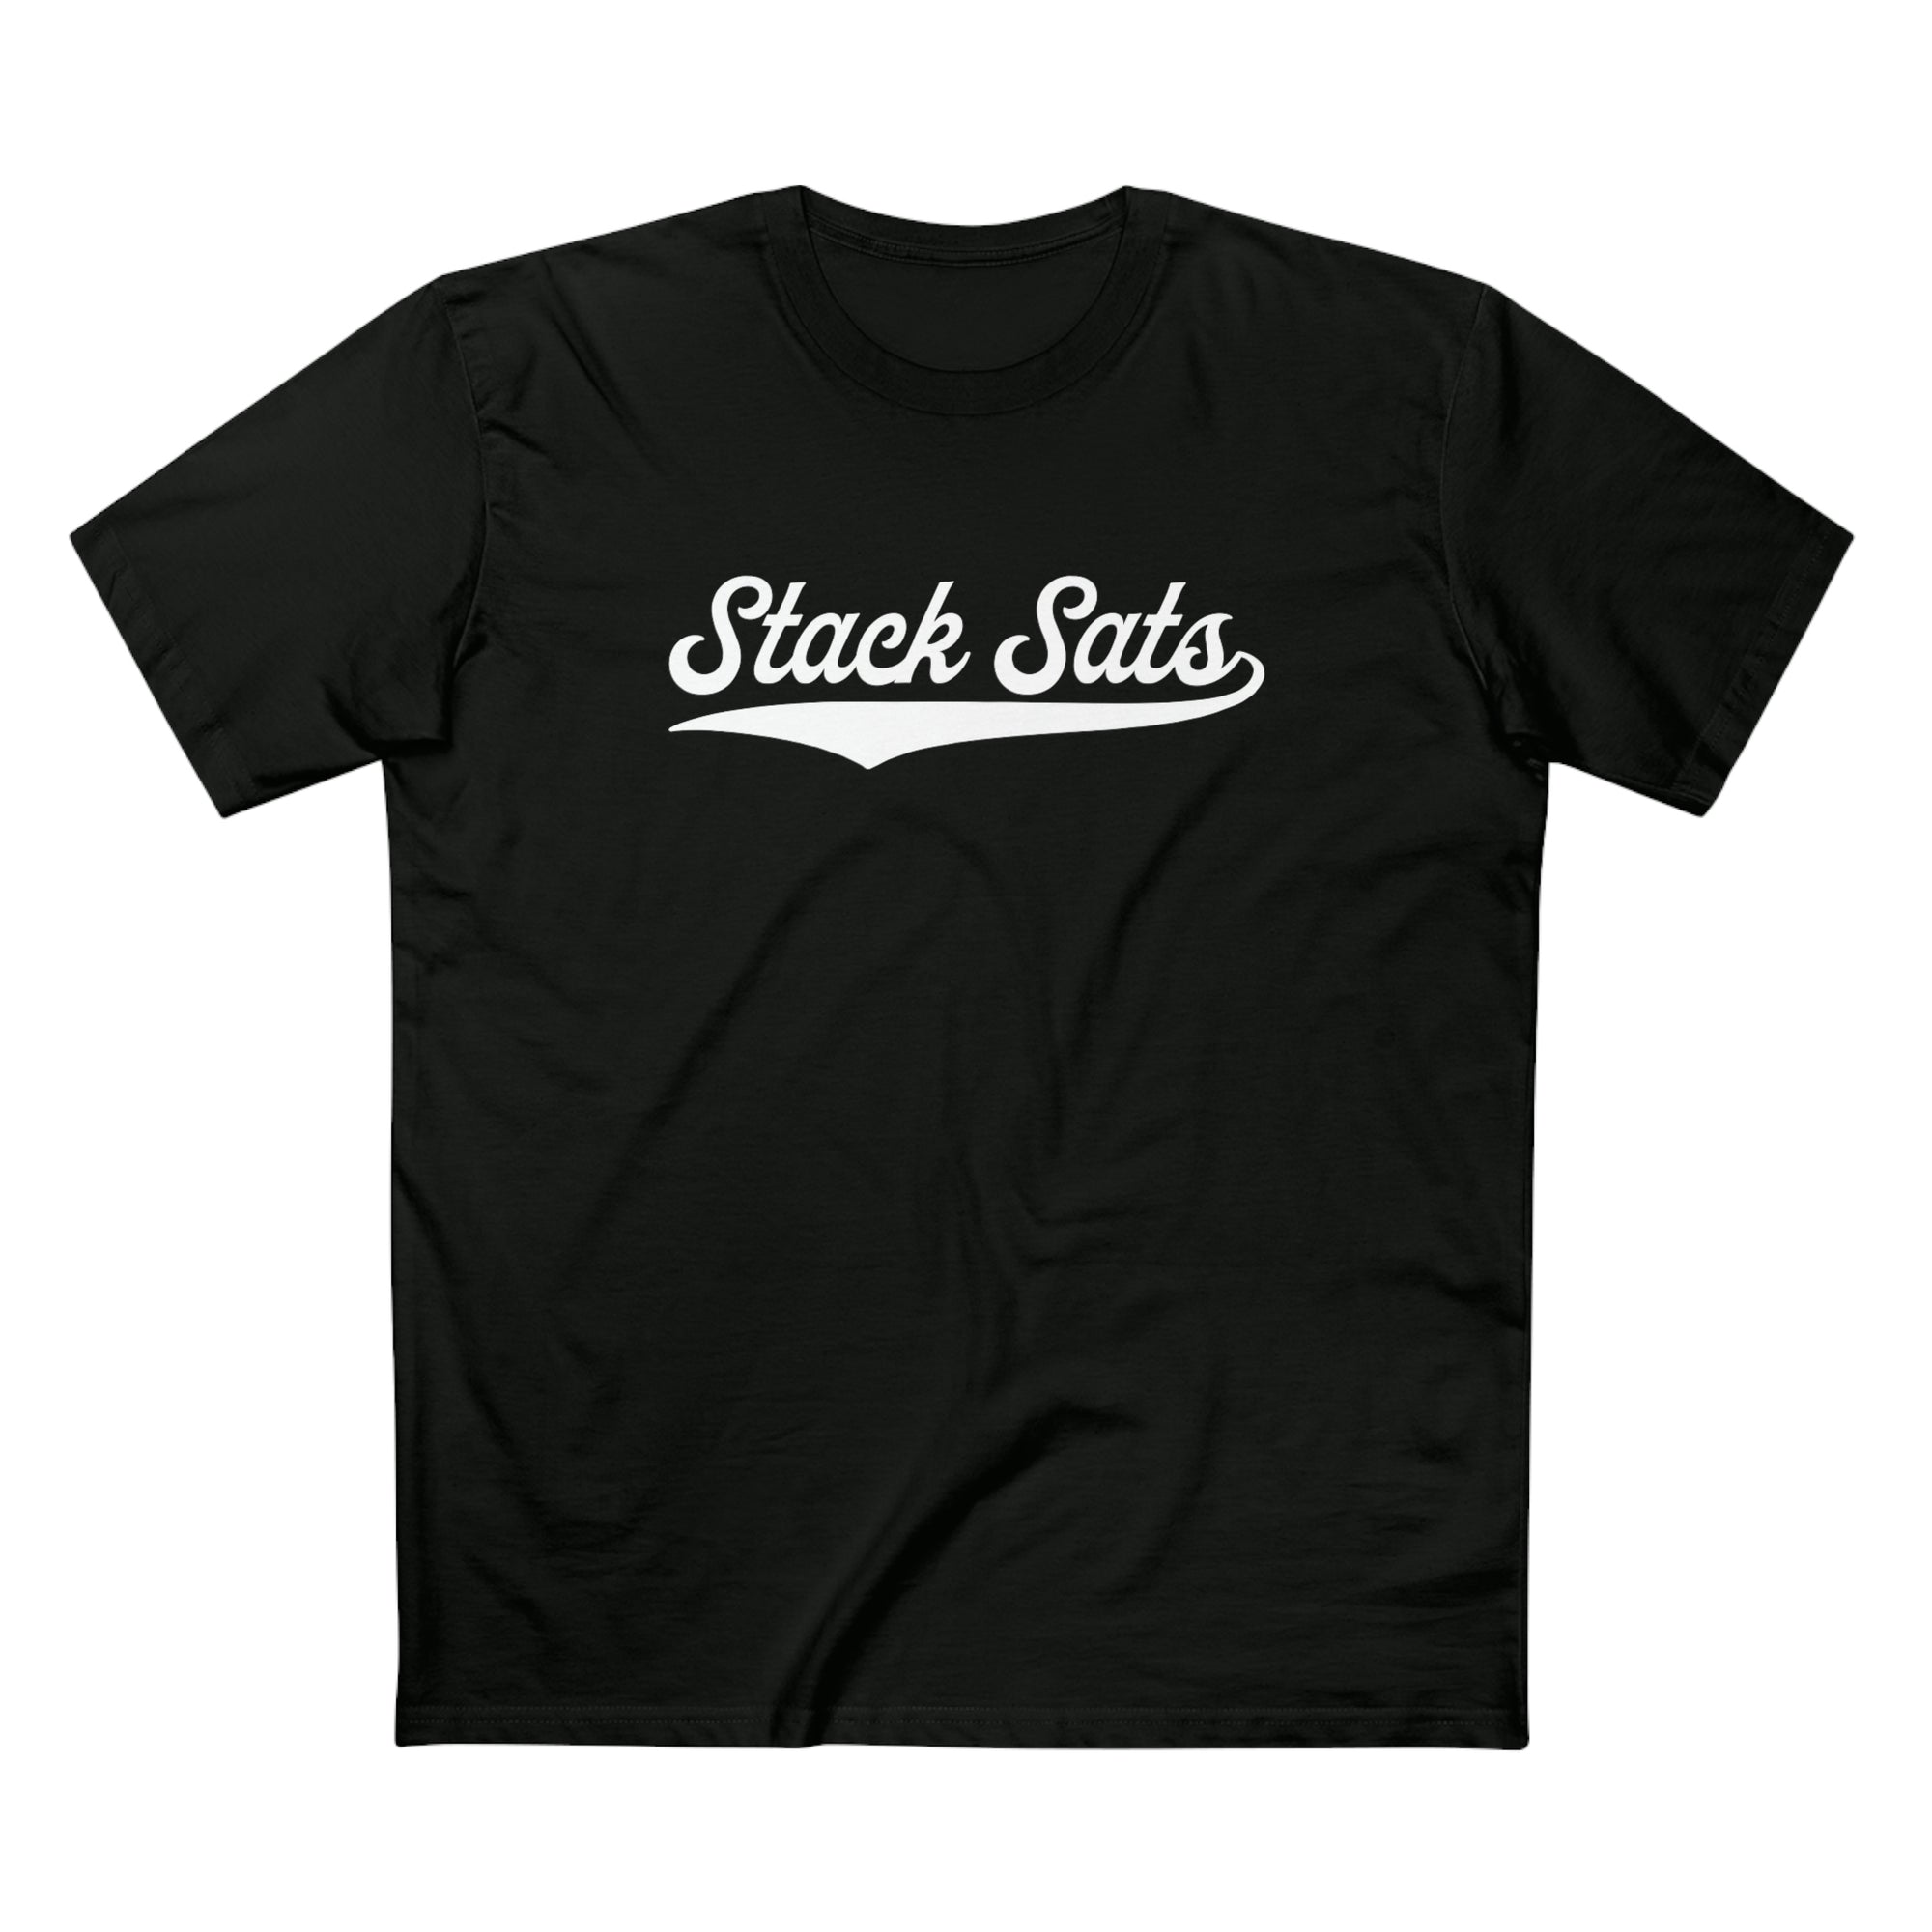 Bitcoin Shirt - Stack Sats T-Shirt. Front view.